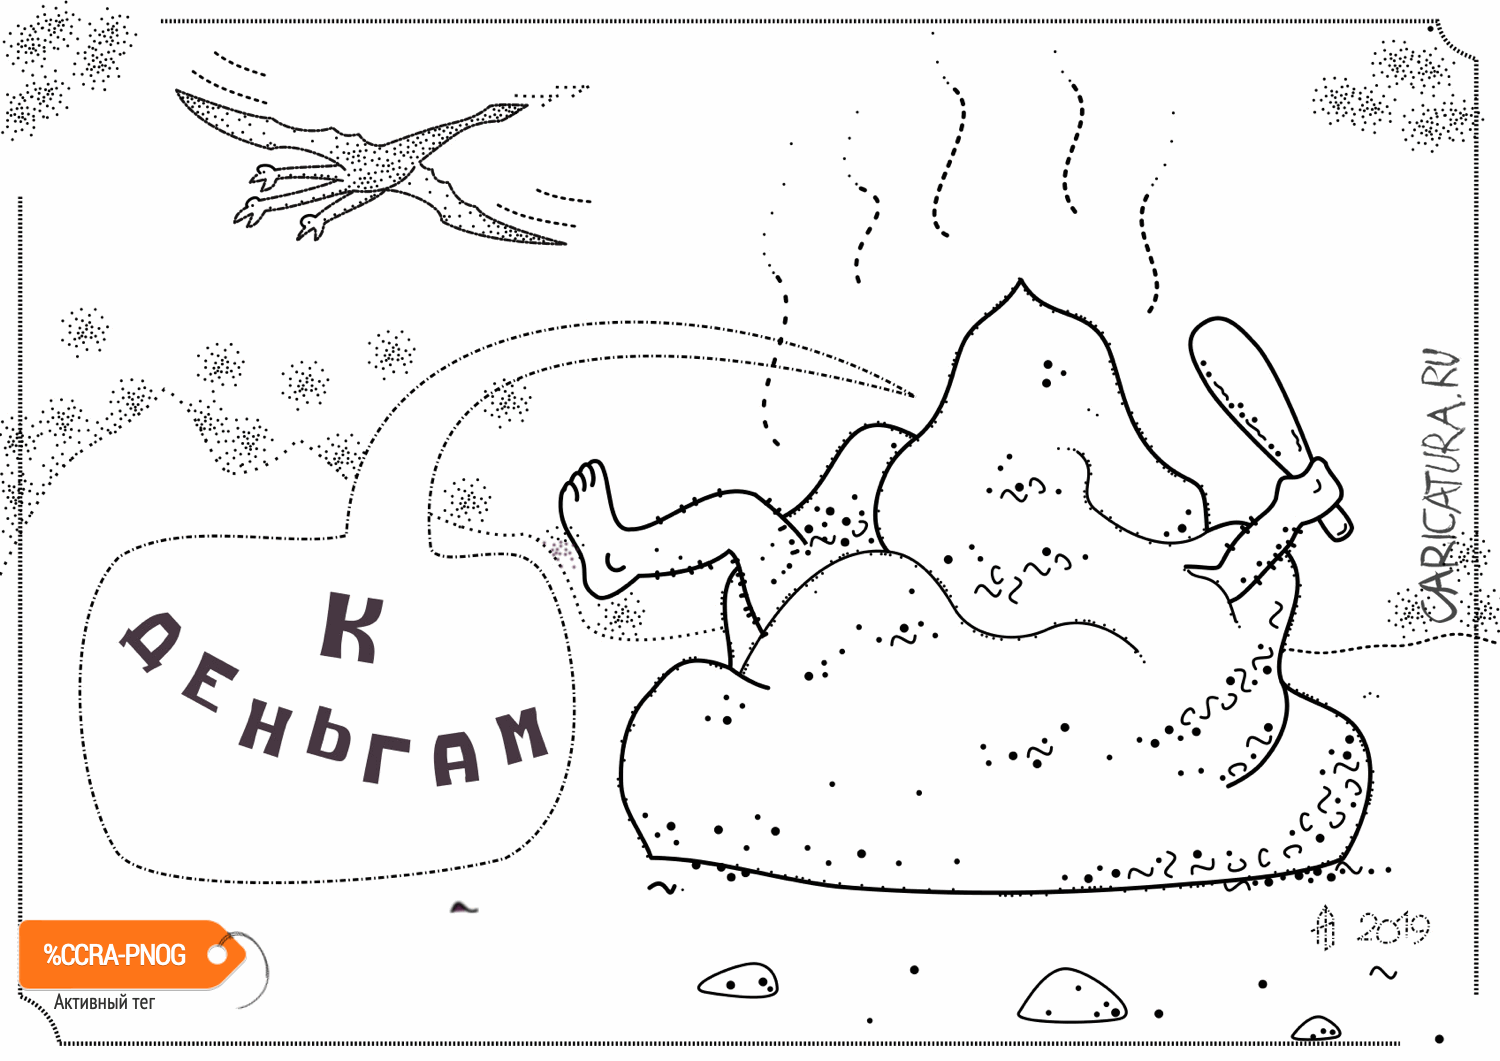 Карикатура "К деньгам", Александр Авдеев